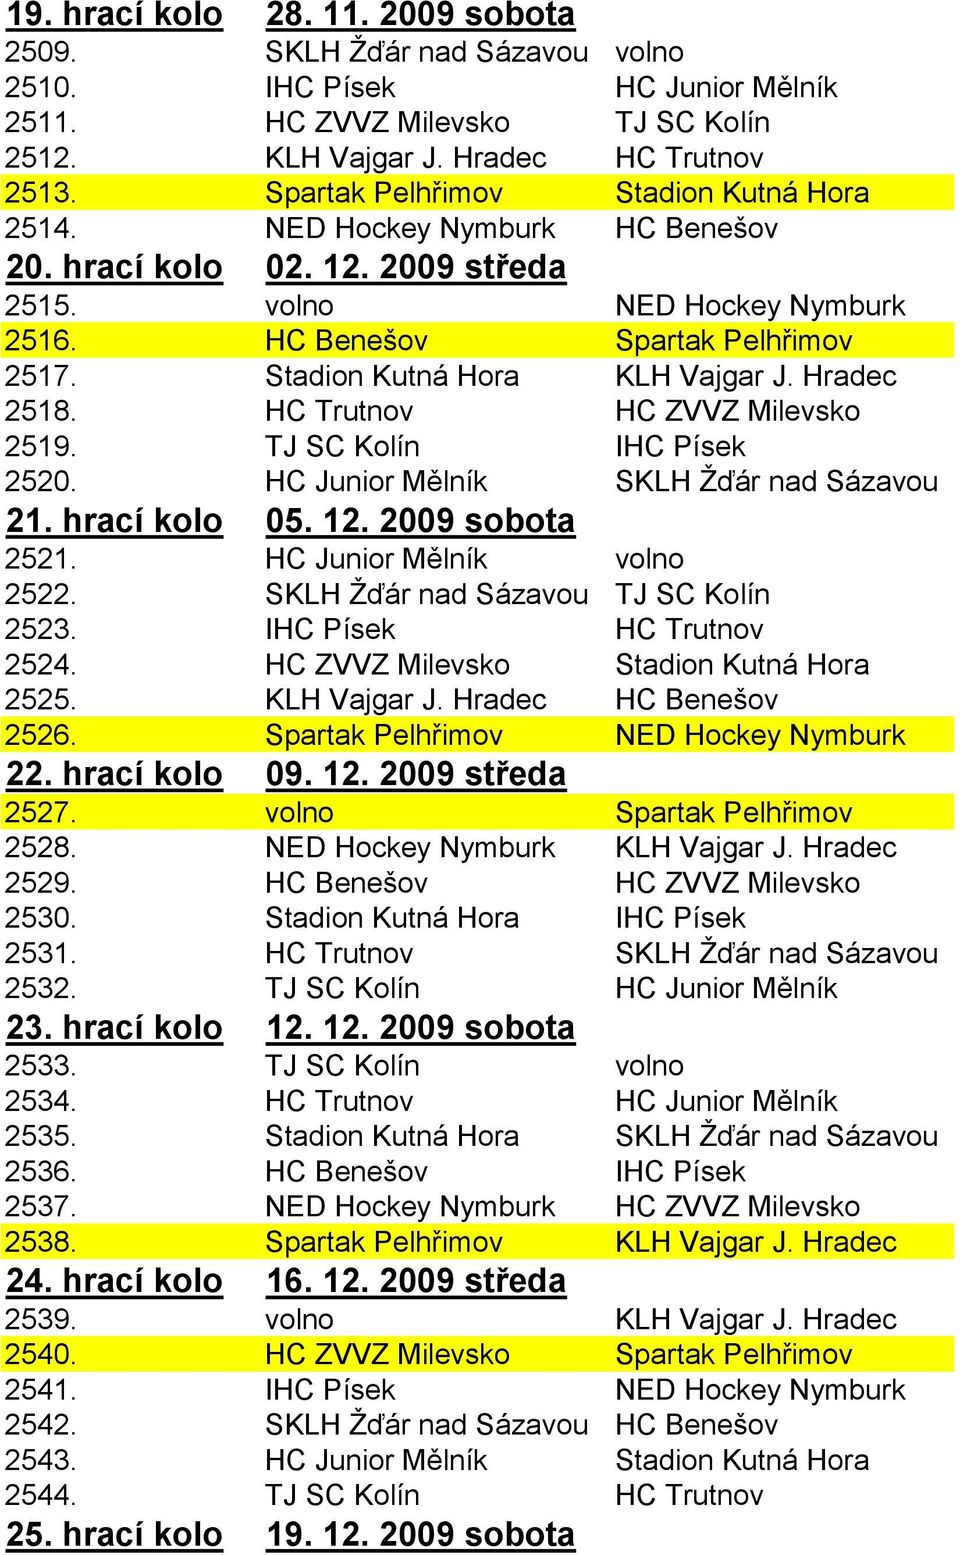 Stadion Kutná Hora KLH Vajgar J. Hradec 2518. HC Trutnov HC ZVVZ Milevsko 2519. TJ SC Kolín IHC Písek 2520. HC Junior Mělník SKLH Žďár nad Sázavou 21. hrací kolo 05. 12. 2009 sobota 2521.